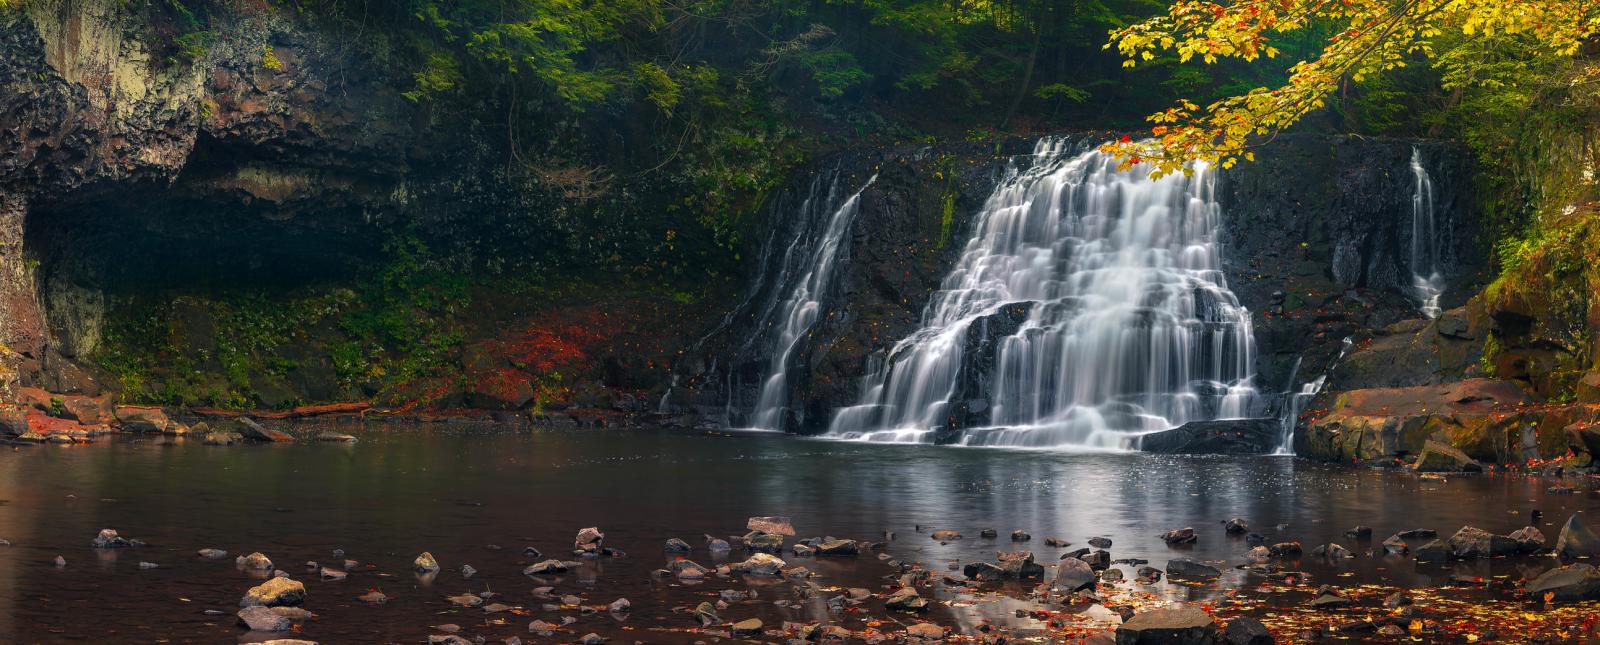 Fall scene at the falls at Wadsworth Falls (Flickr)